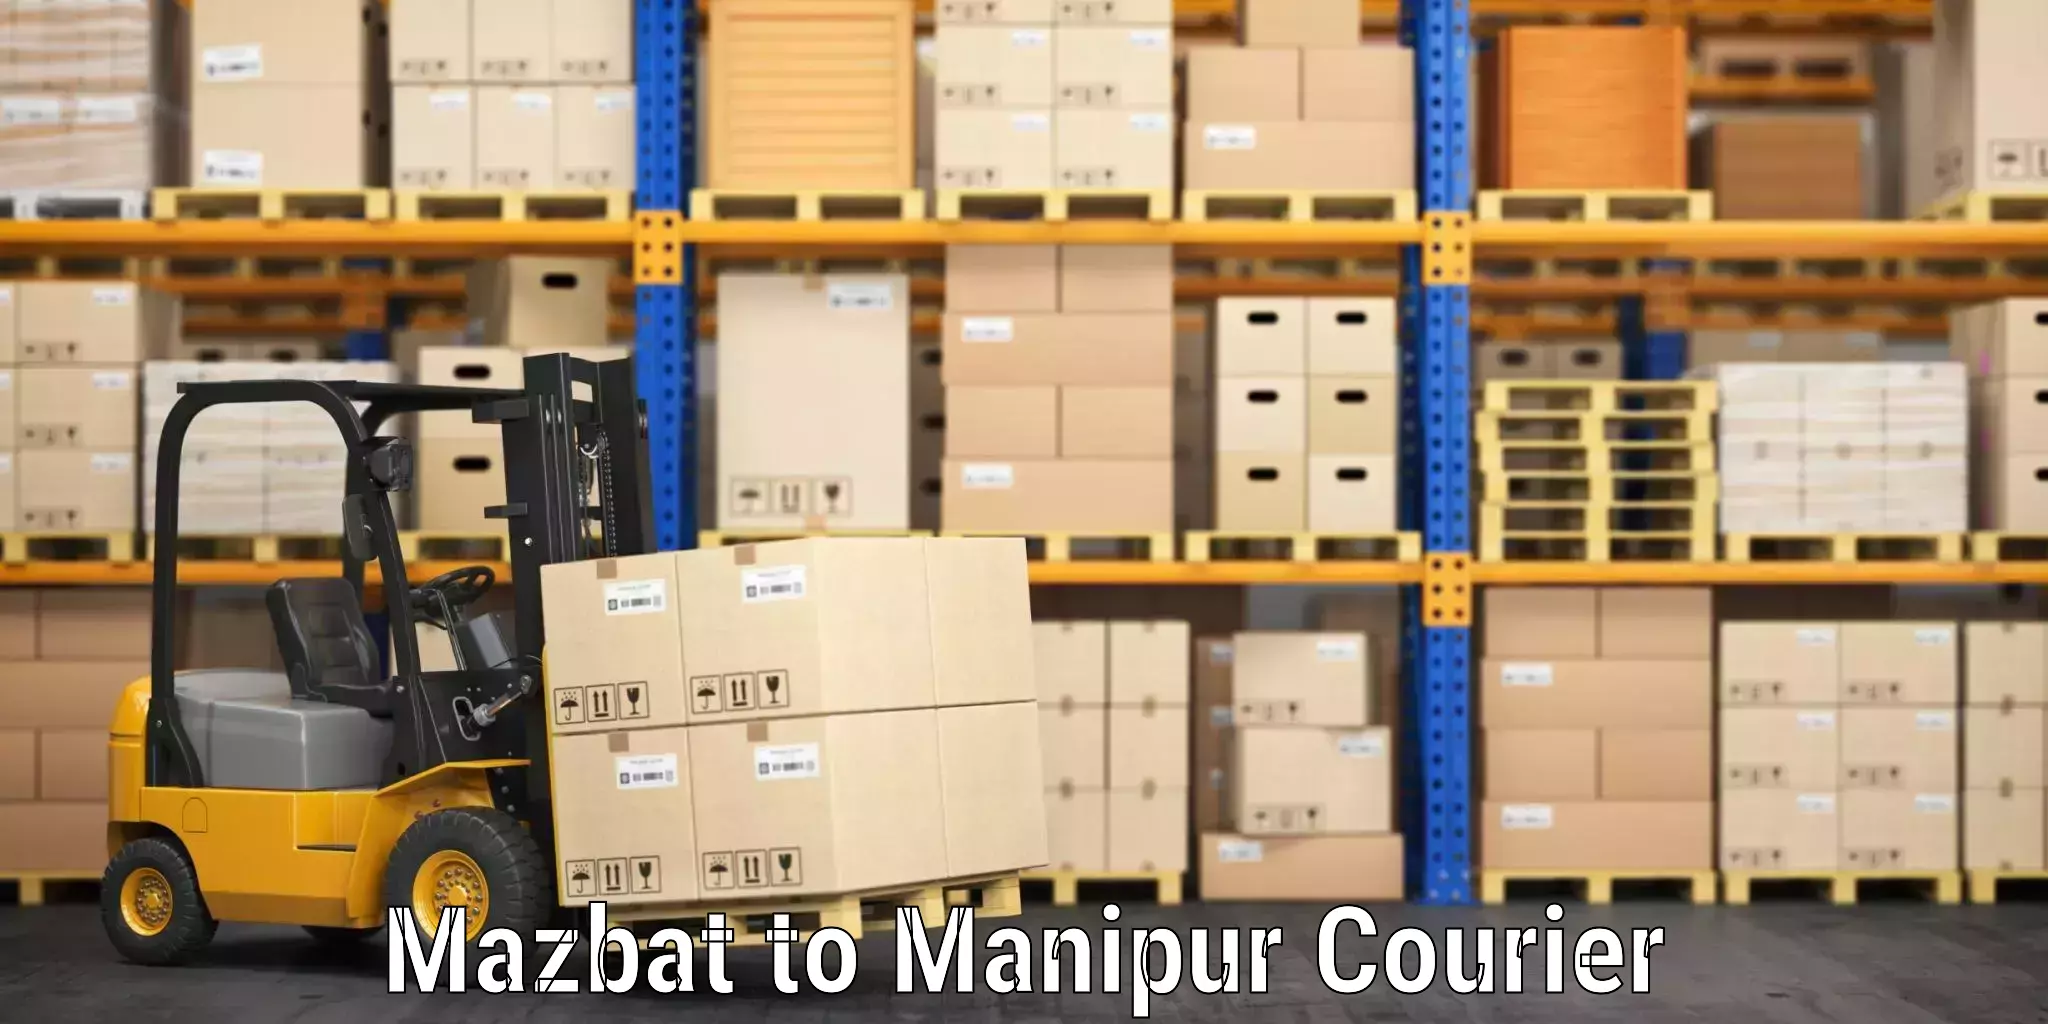 Luggage shipping planner Mazbat to Ukhrul